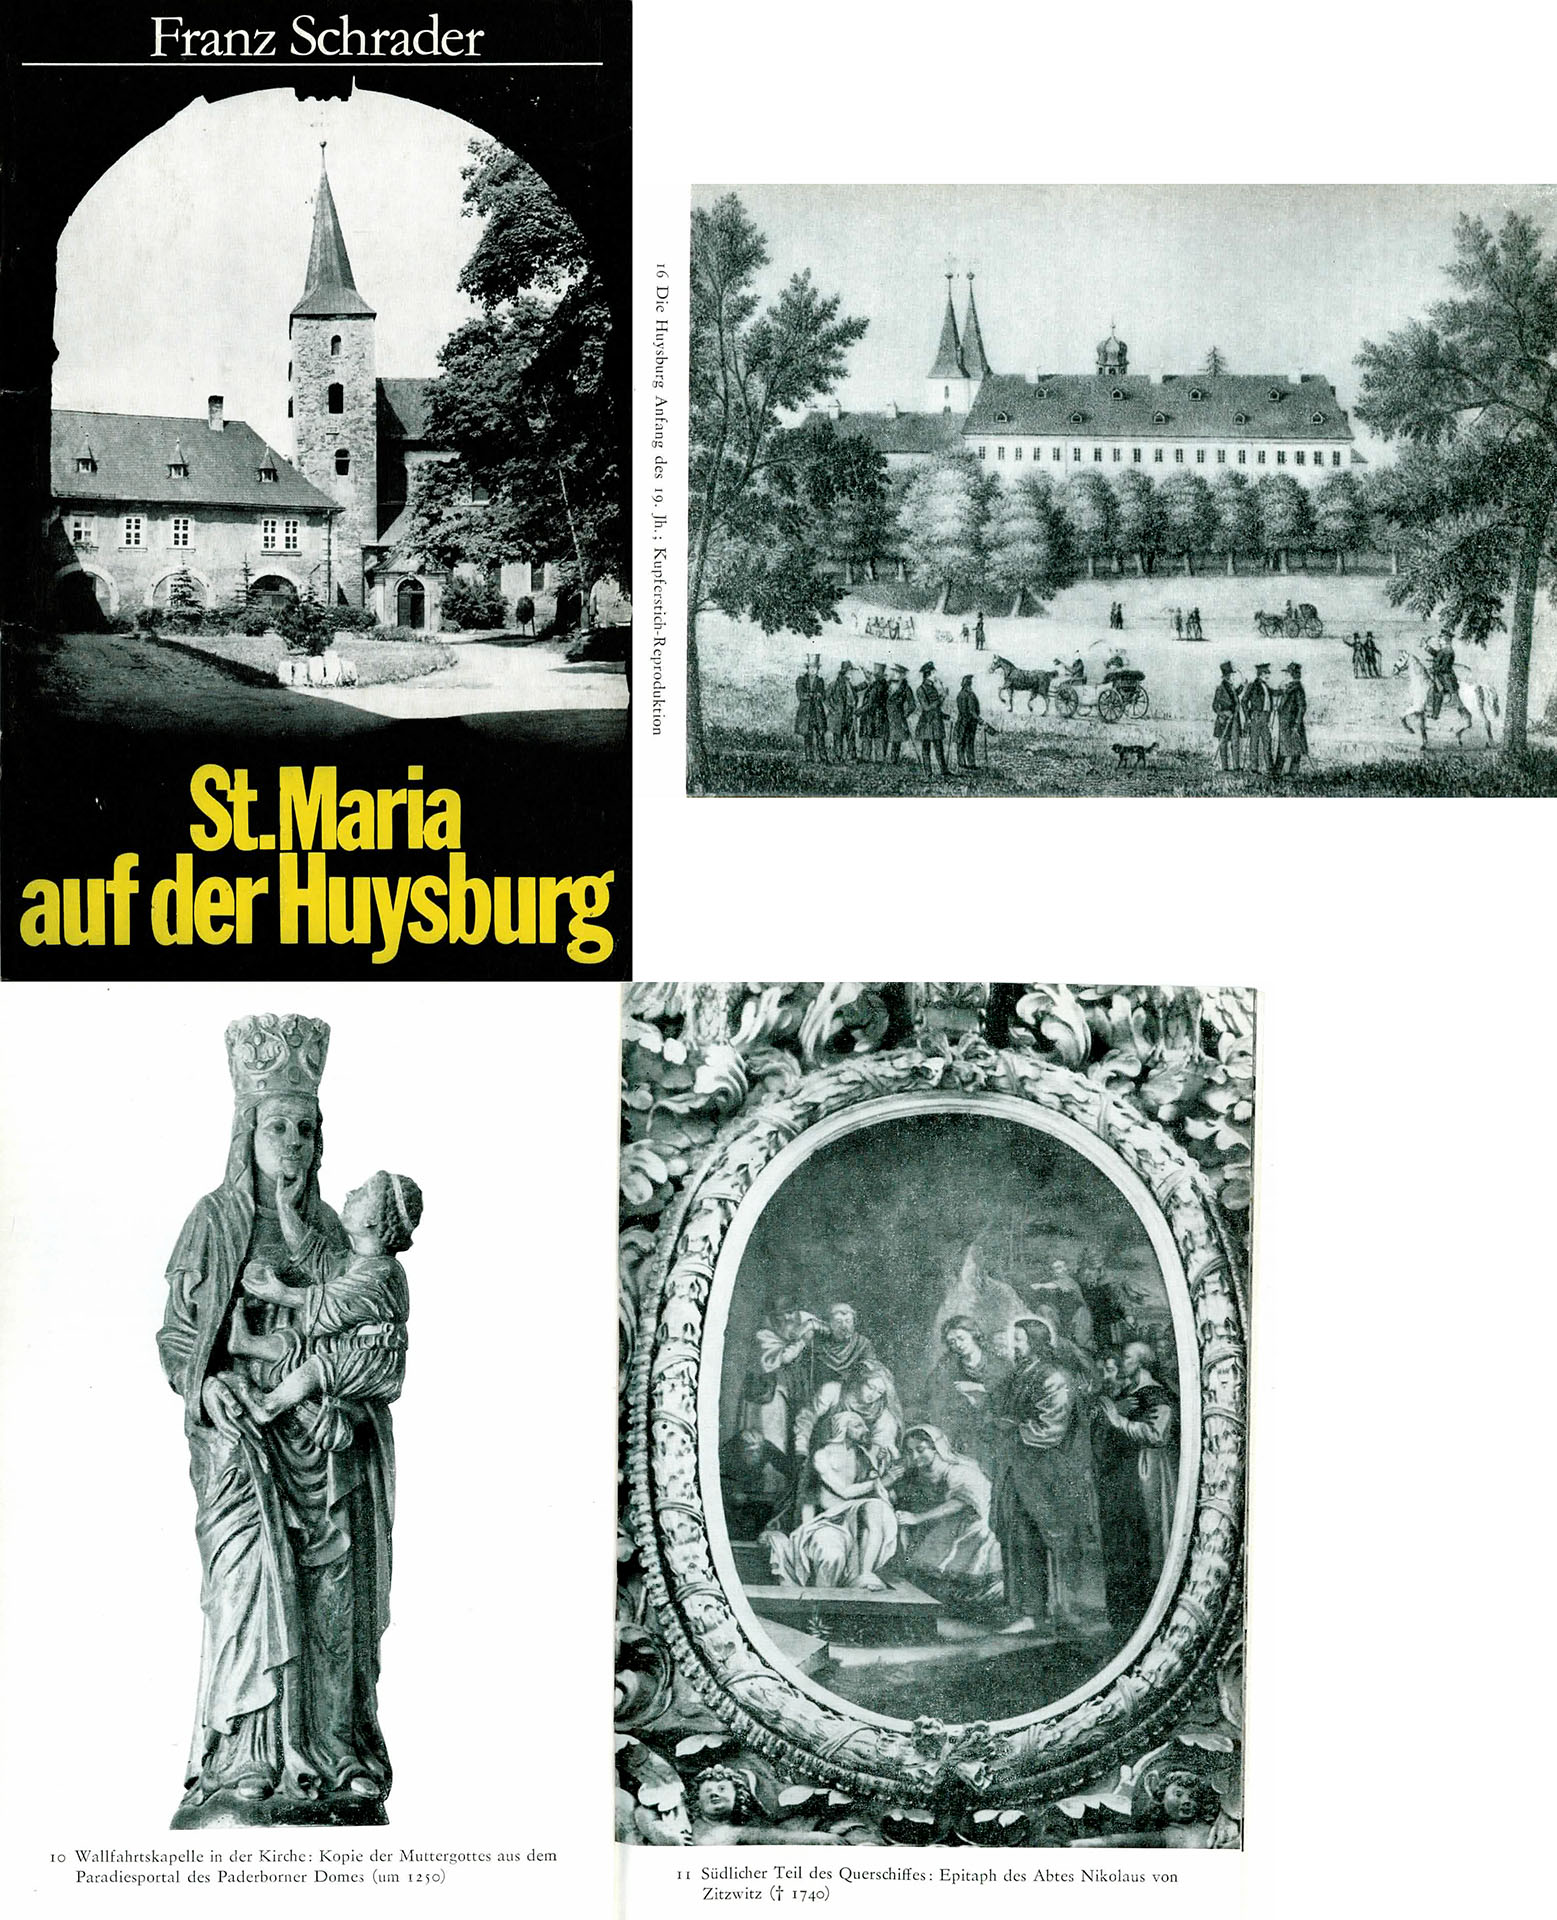 St. Maria auf der Huysburg - Franz Schrader